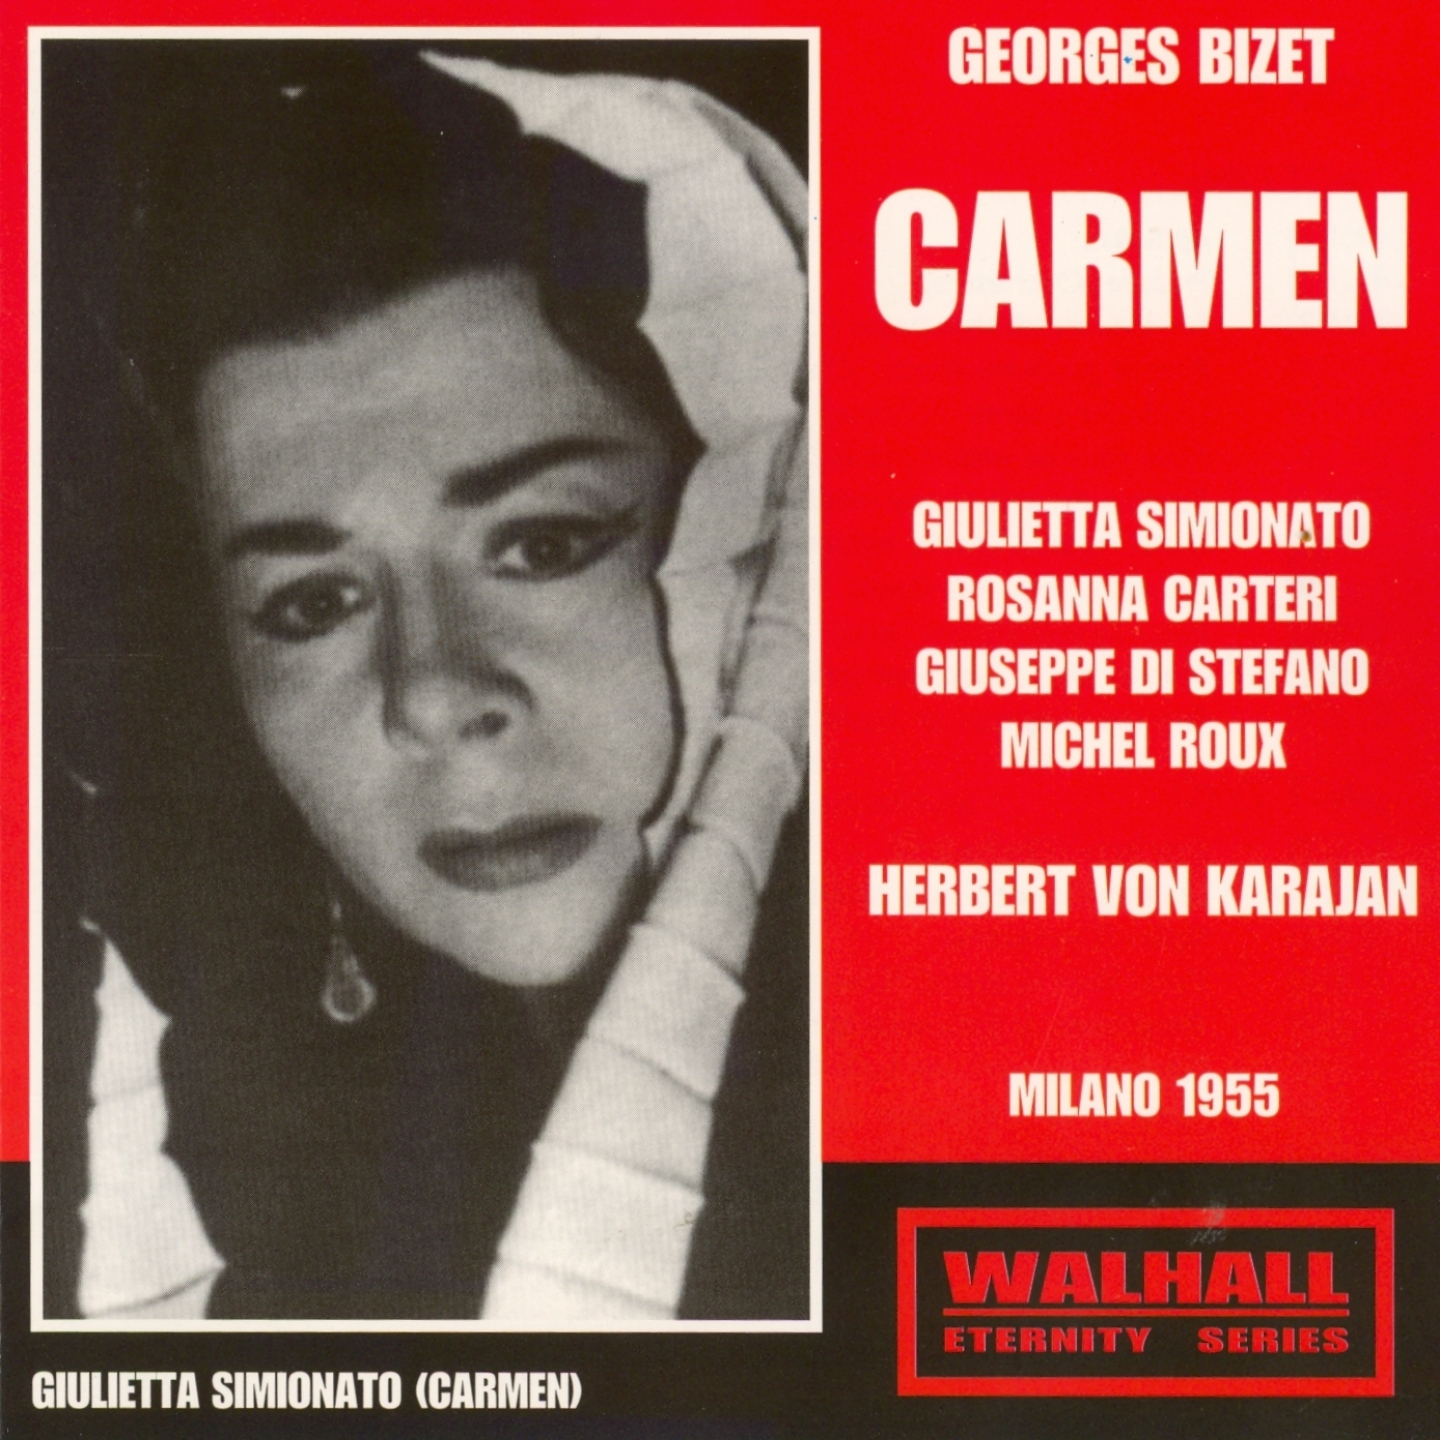 Carmen, Act I : Rest' la maintenant